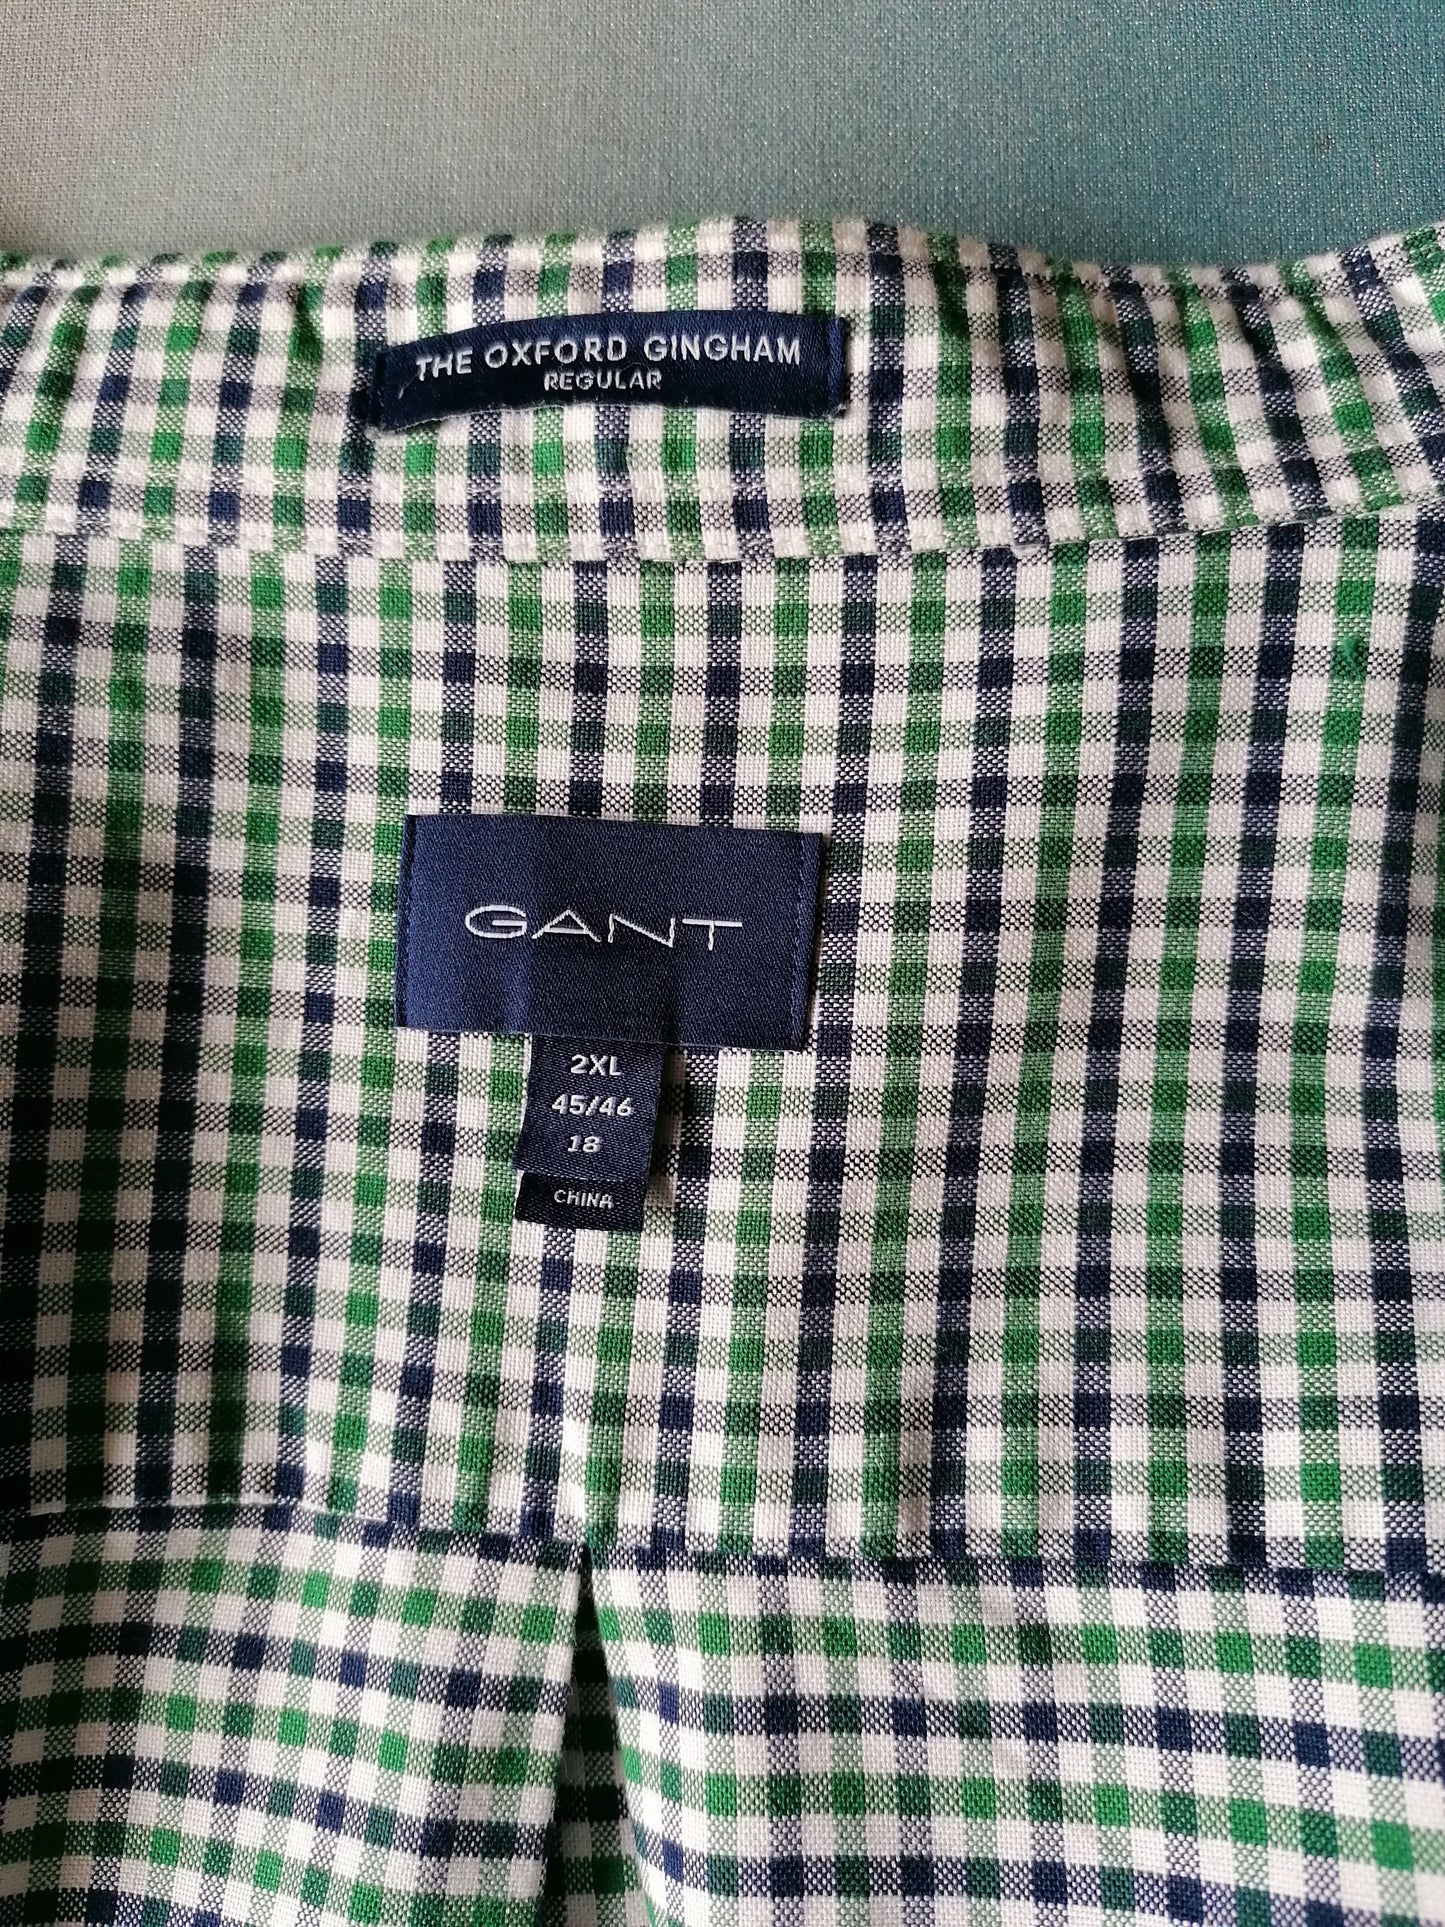 Camisa Gant. Azul verde a cuadros. Tamaño XXL / 2XL. Escriba Oxford Gingham.